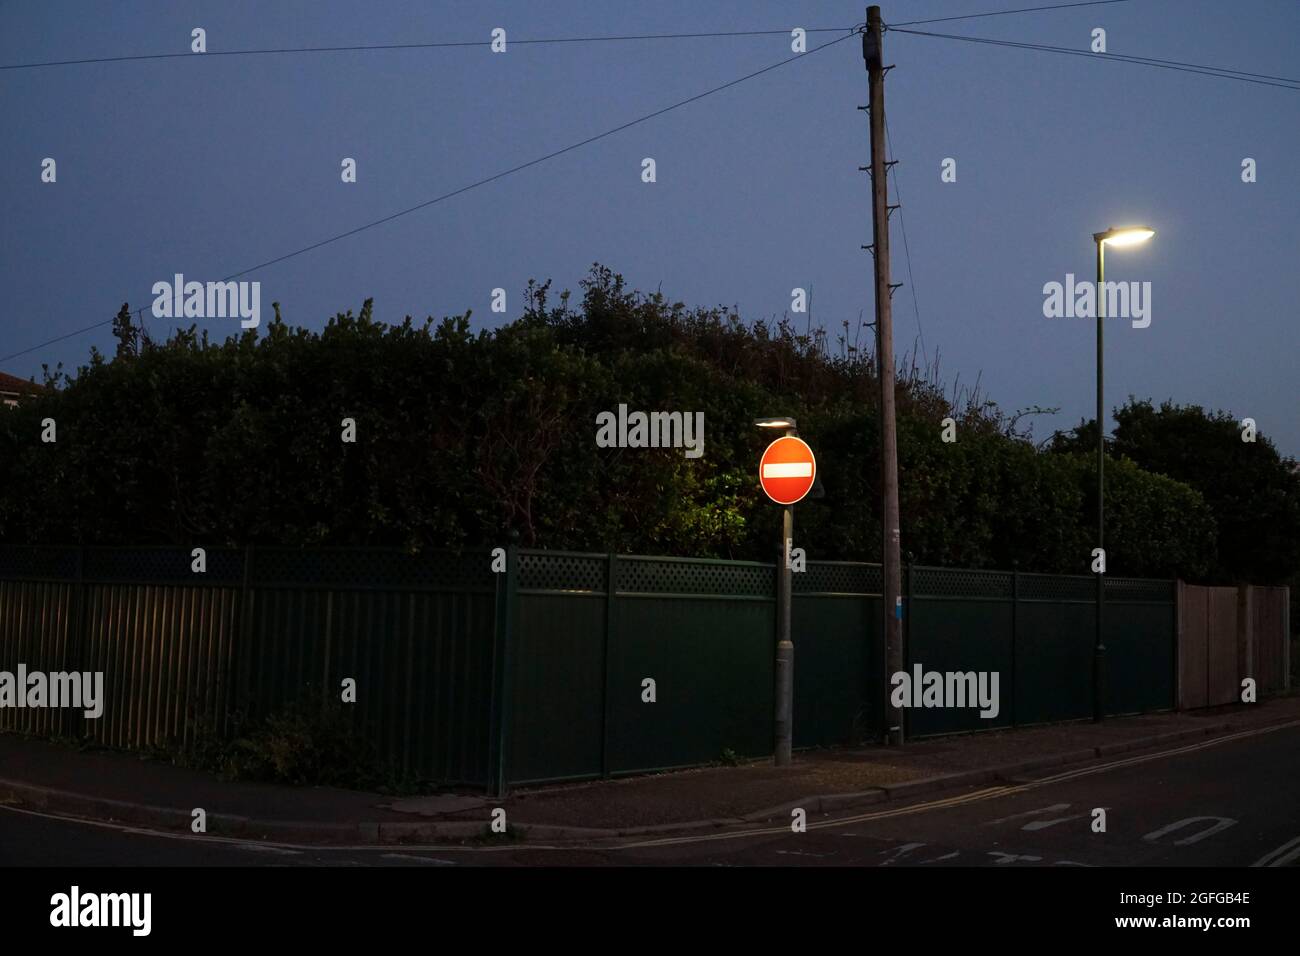 East Wittering, UK, 25 agosto 2021: Al crepuscolo un cartello illuminato No Entry si distingue nettamente contro un'alta siepe su una strada suburbana. Foto Stock